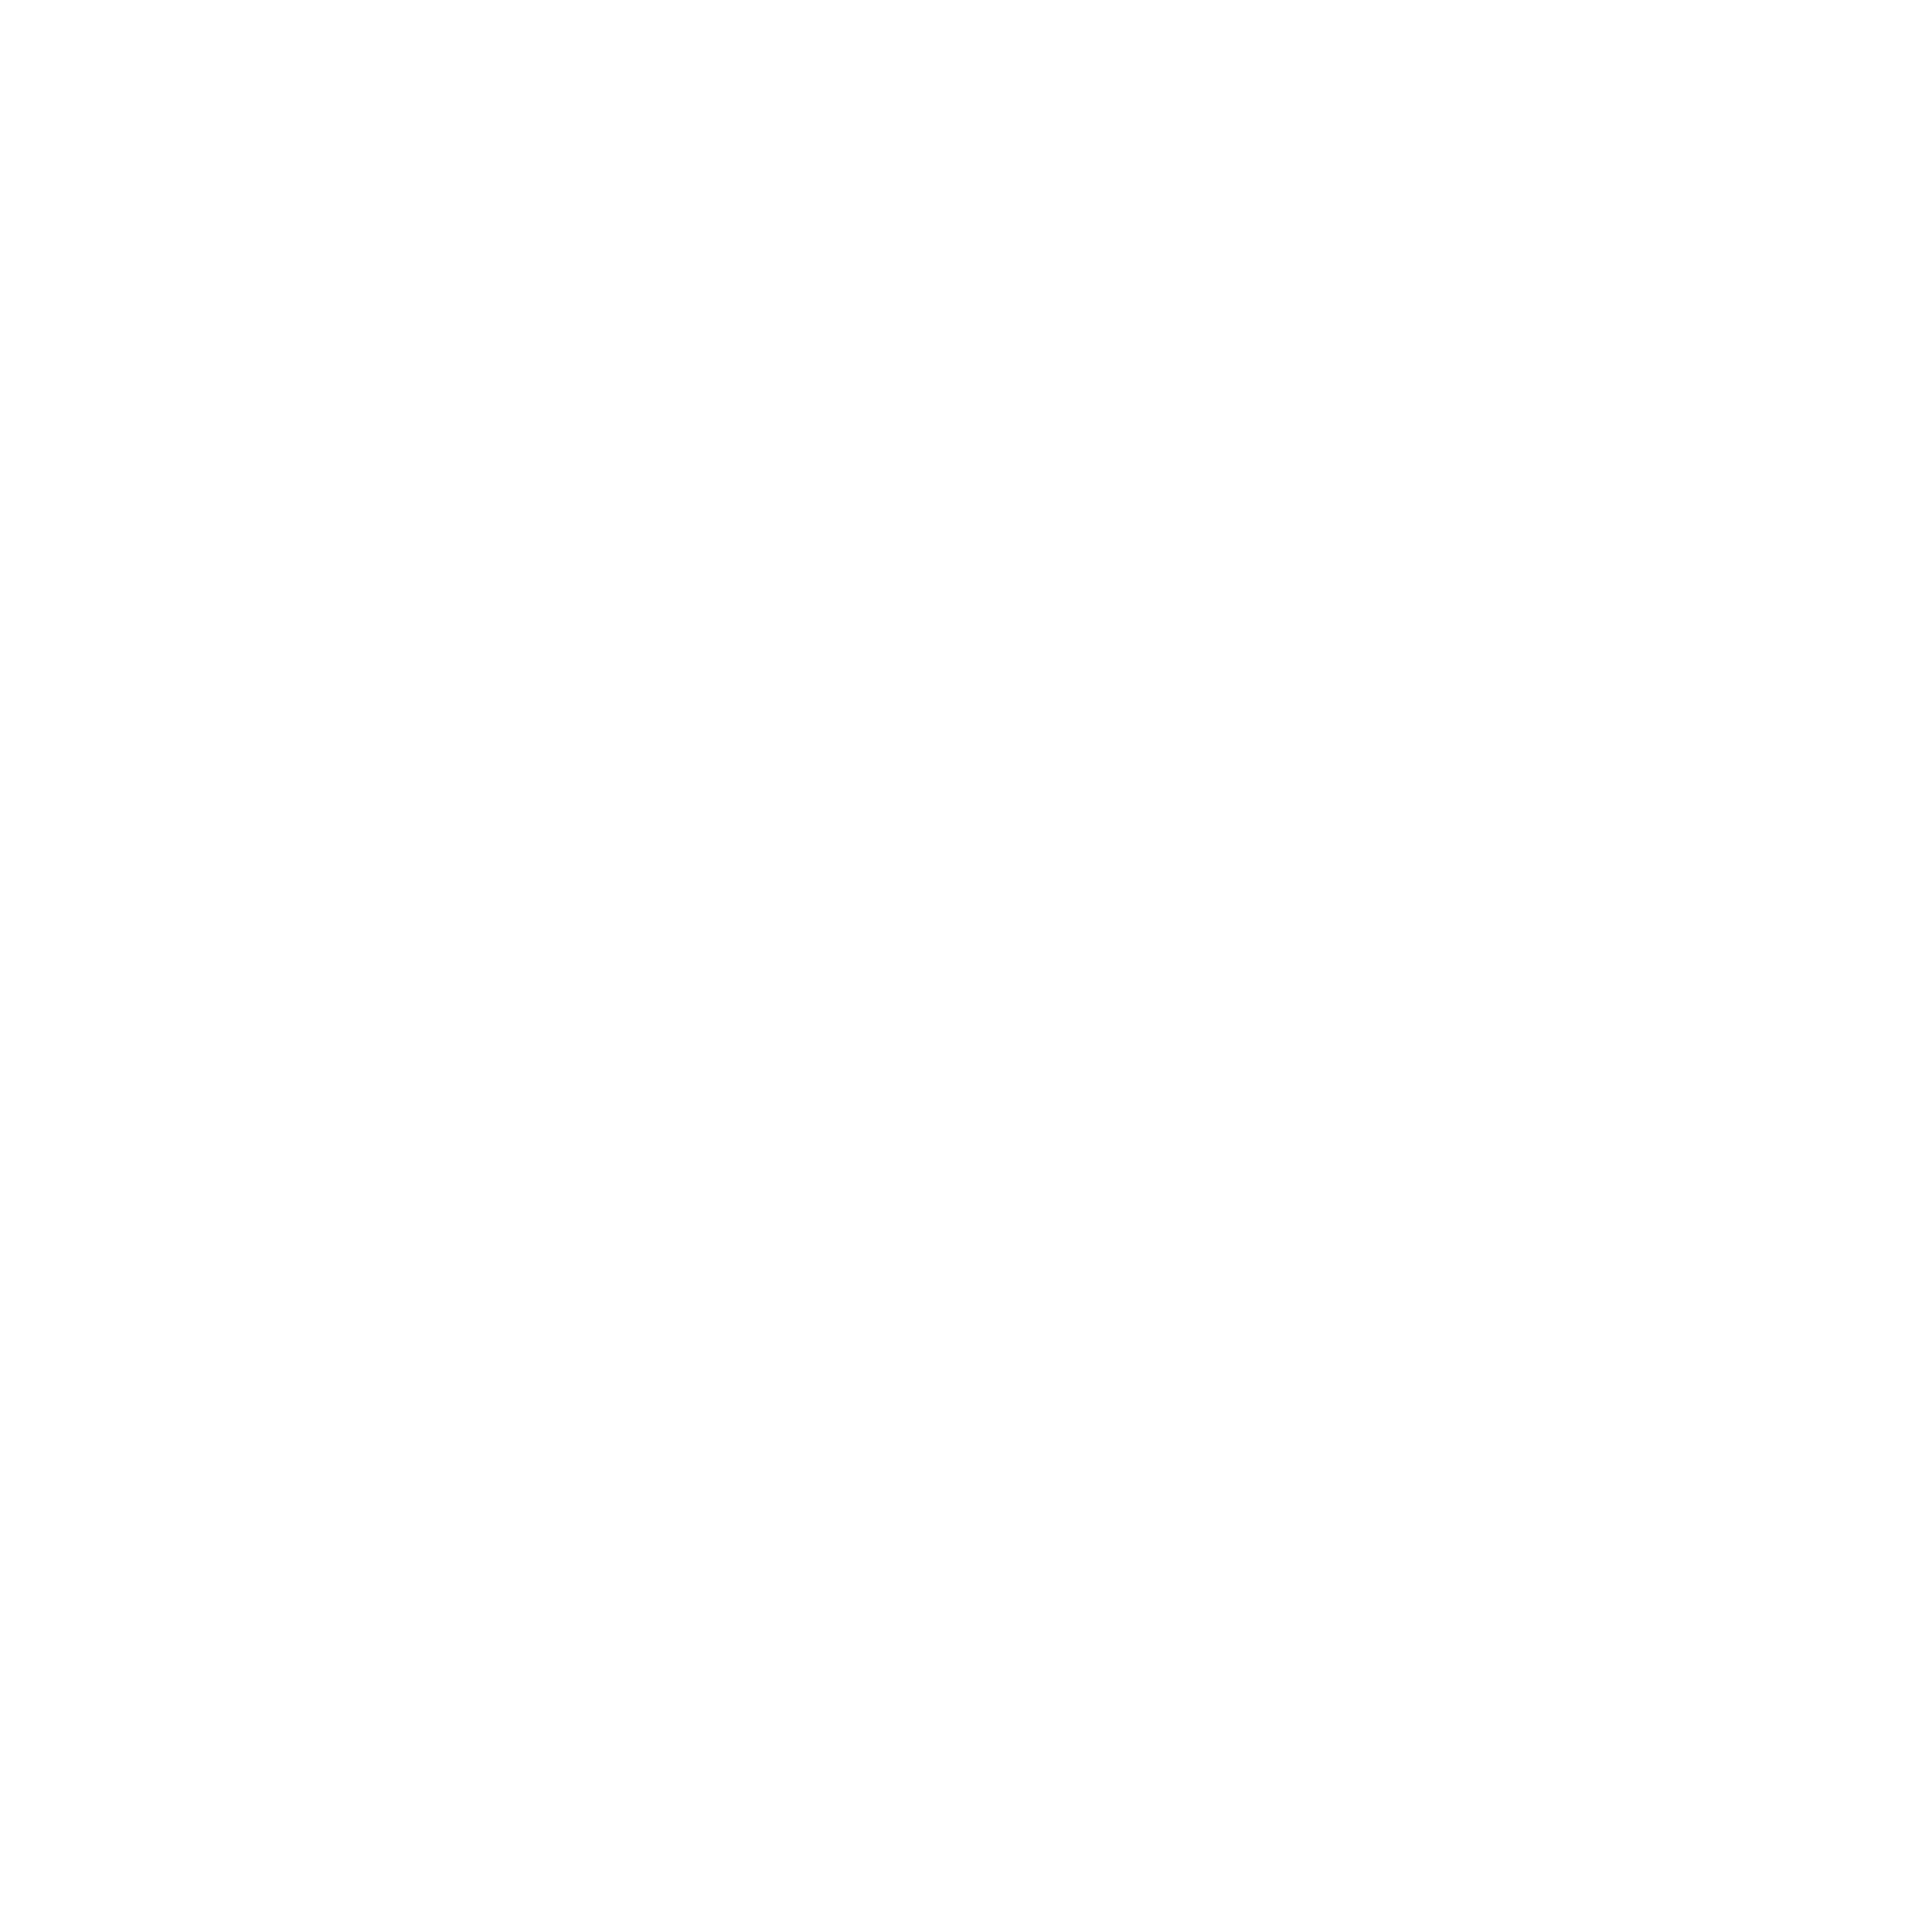 Veon Logo